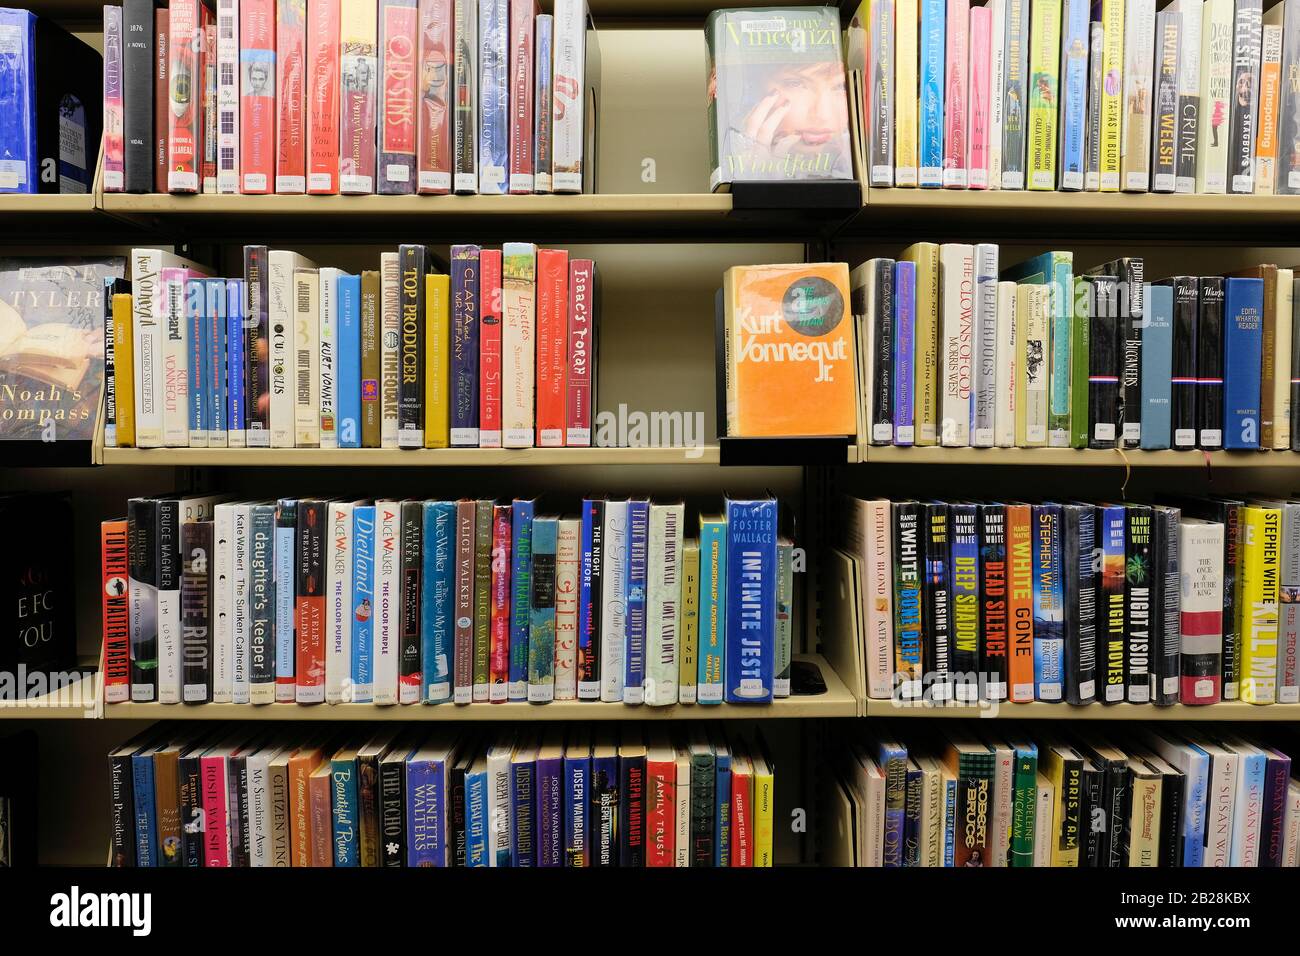 Teil V durch w Abschnitt einer öffentlichen Bibliothek, mit Autoren wie Gore Vidal, Kurt Vonnegut, Alice Walker und David Foster Wallace. Stockfoto